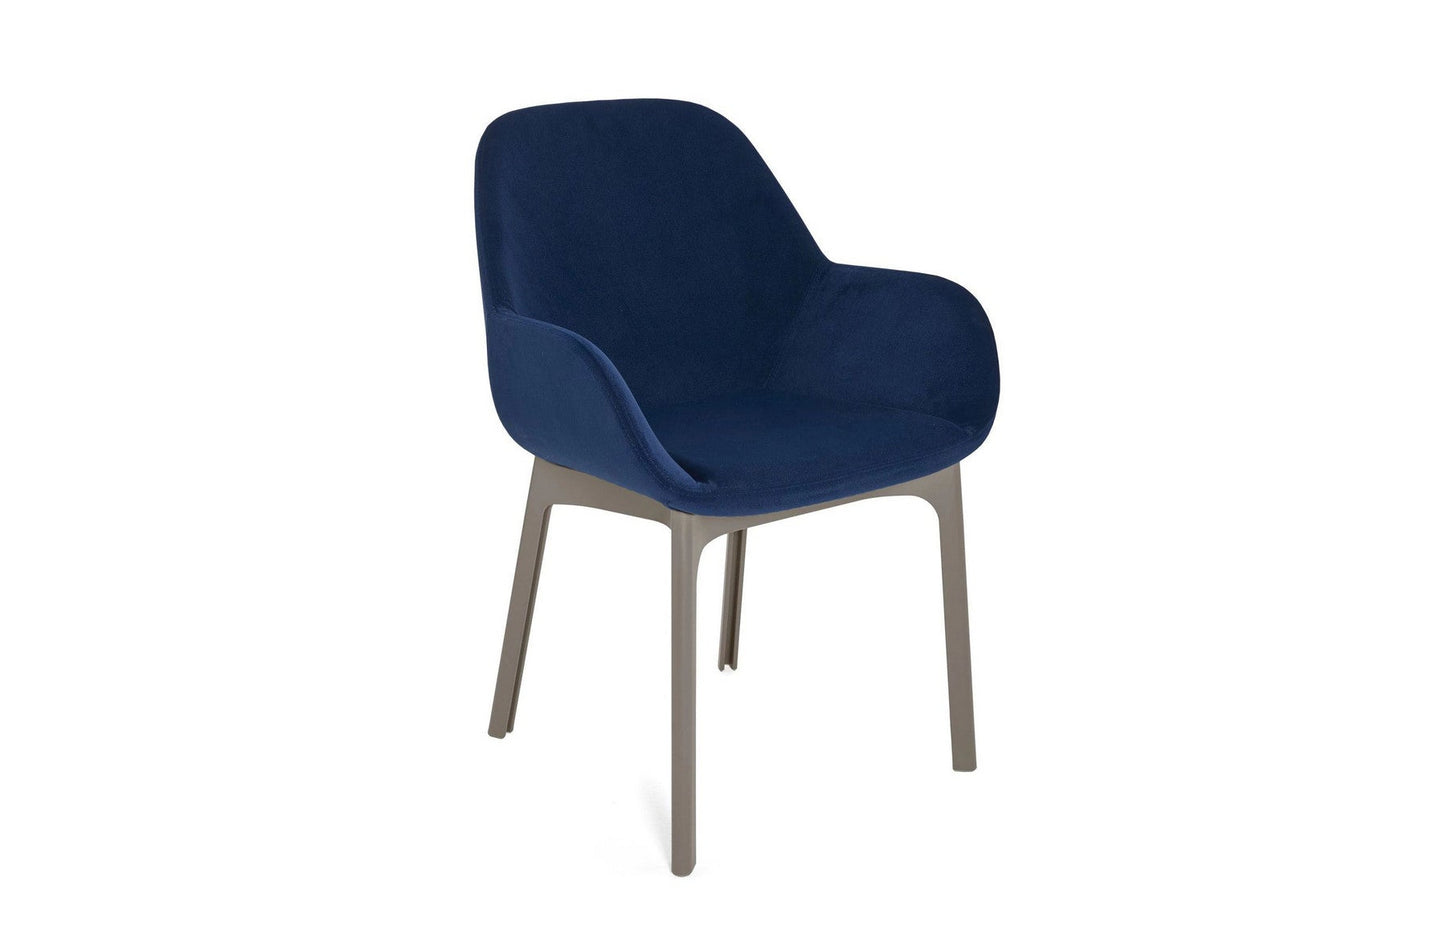 Clap Chair - Aquaclean Fabric
